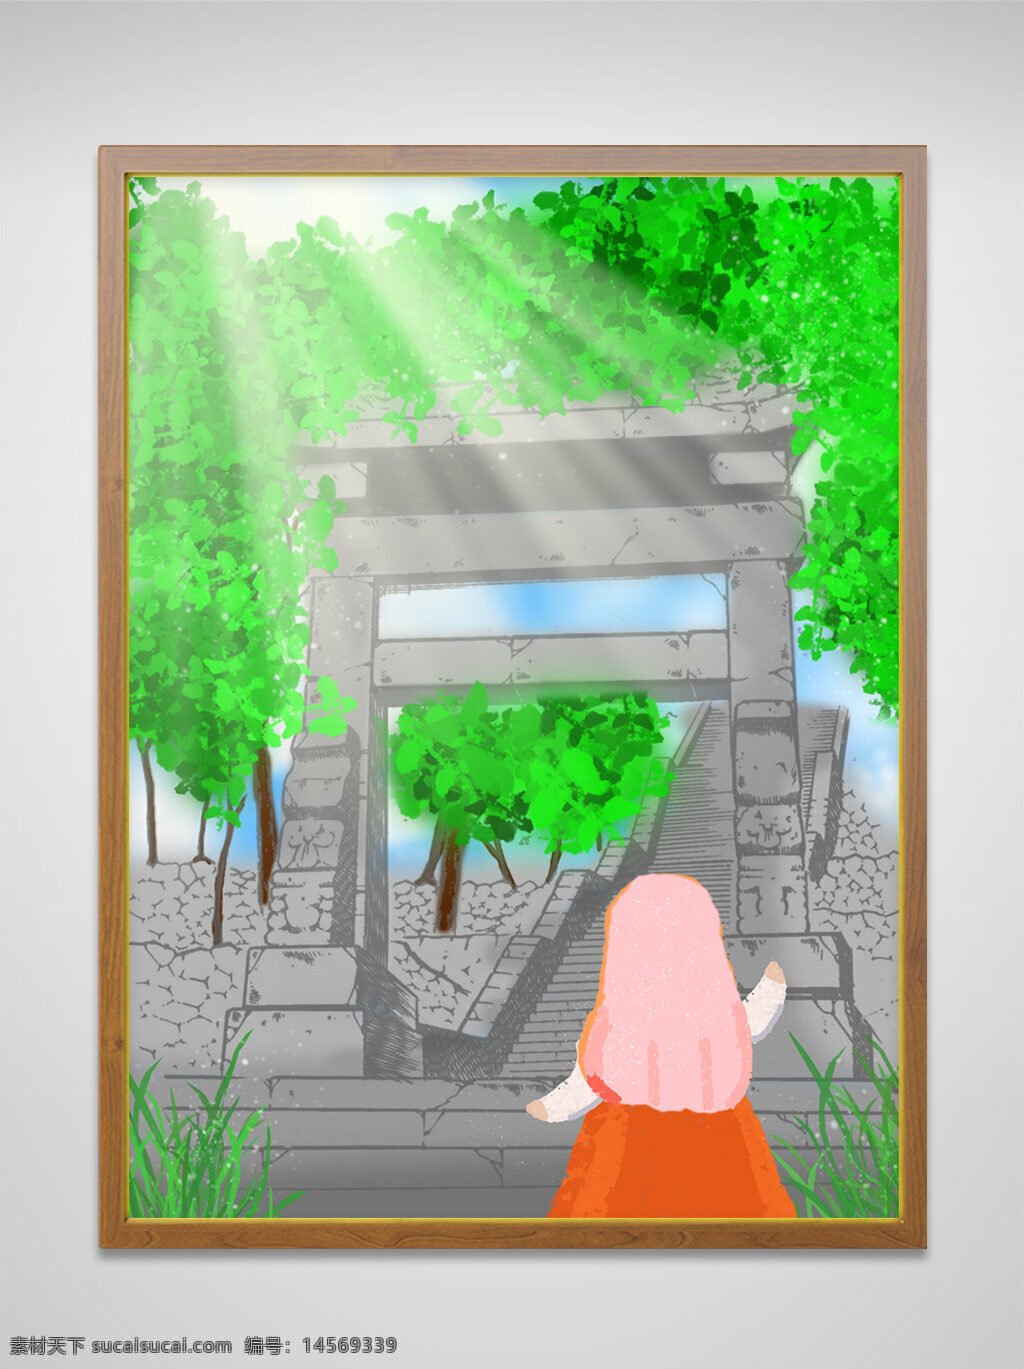 夏 风景 建筑 插画 手绘 人物 小女孩 平面 绿意 绿叶 清爽 山路 台阶 树木